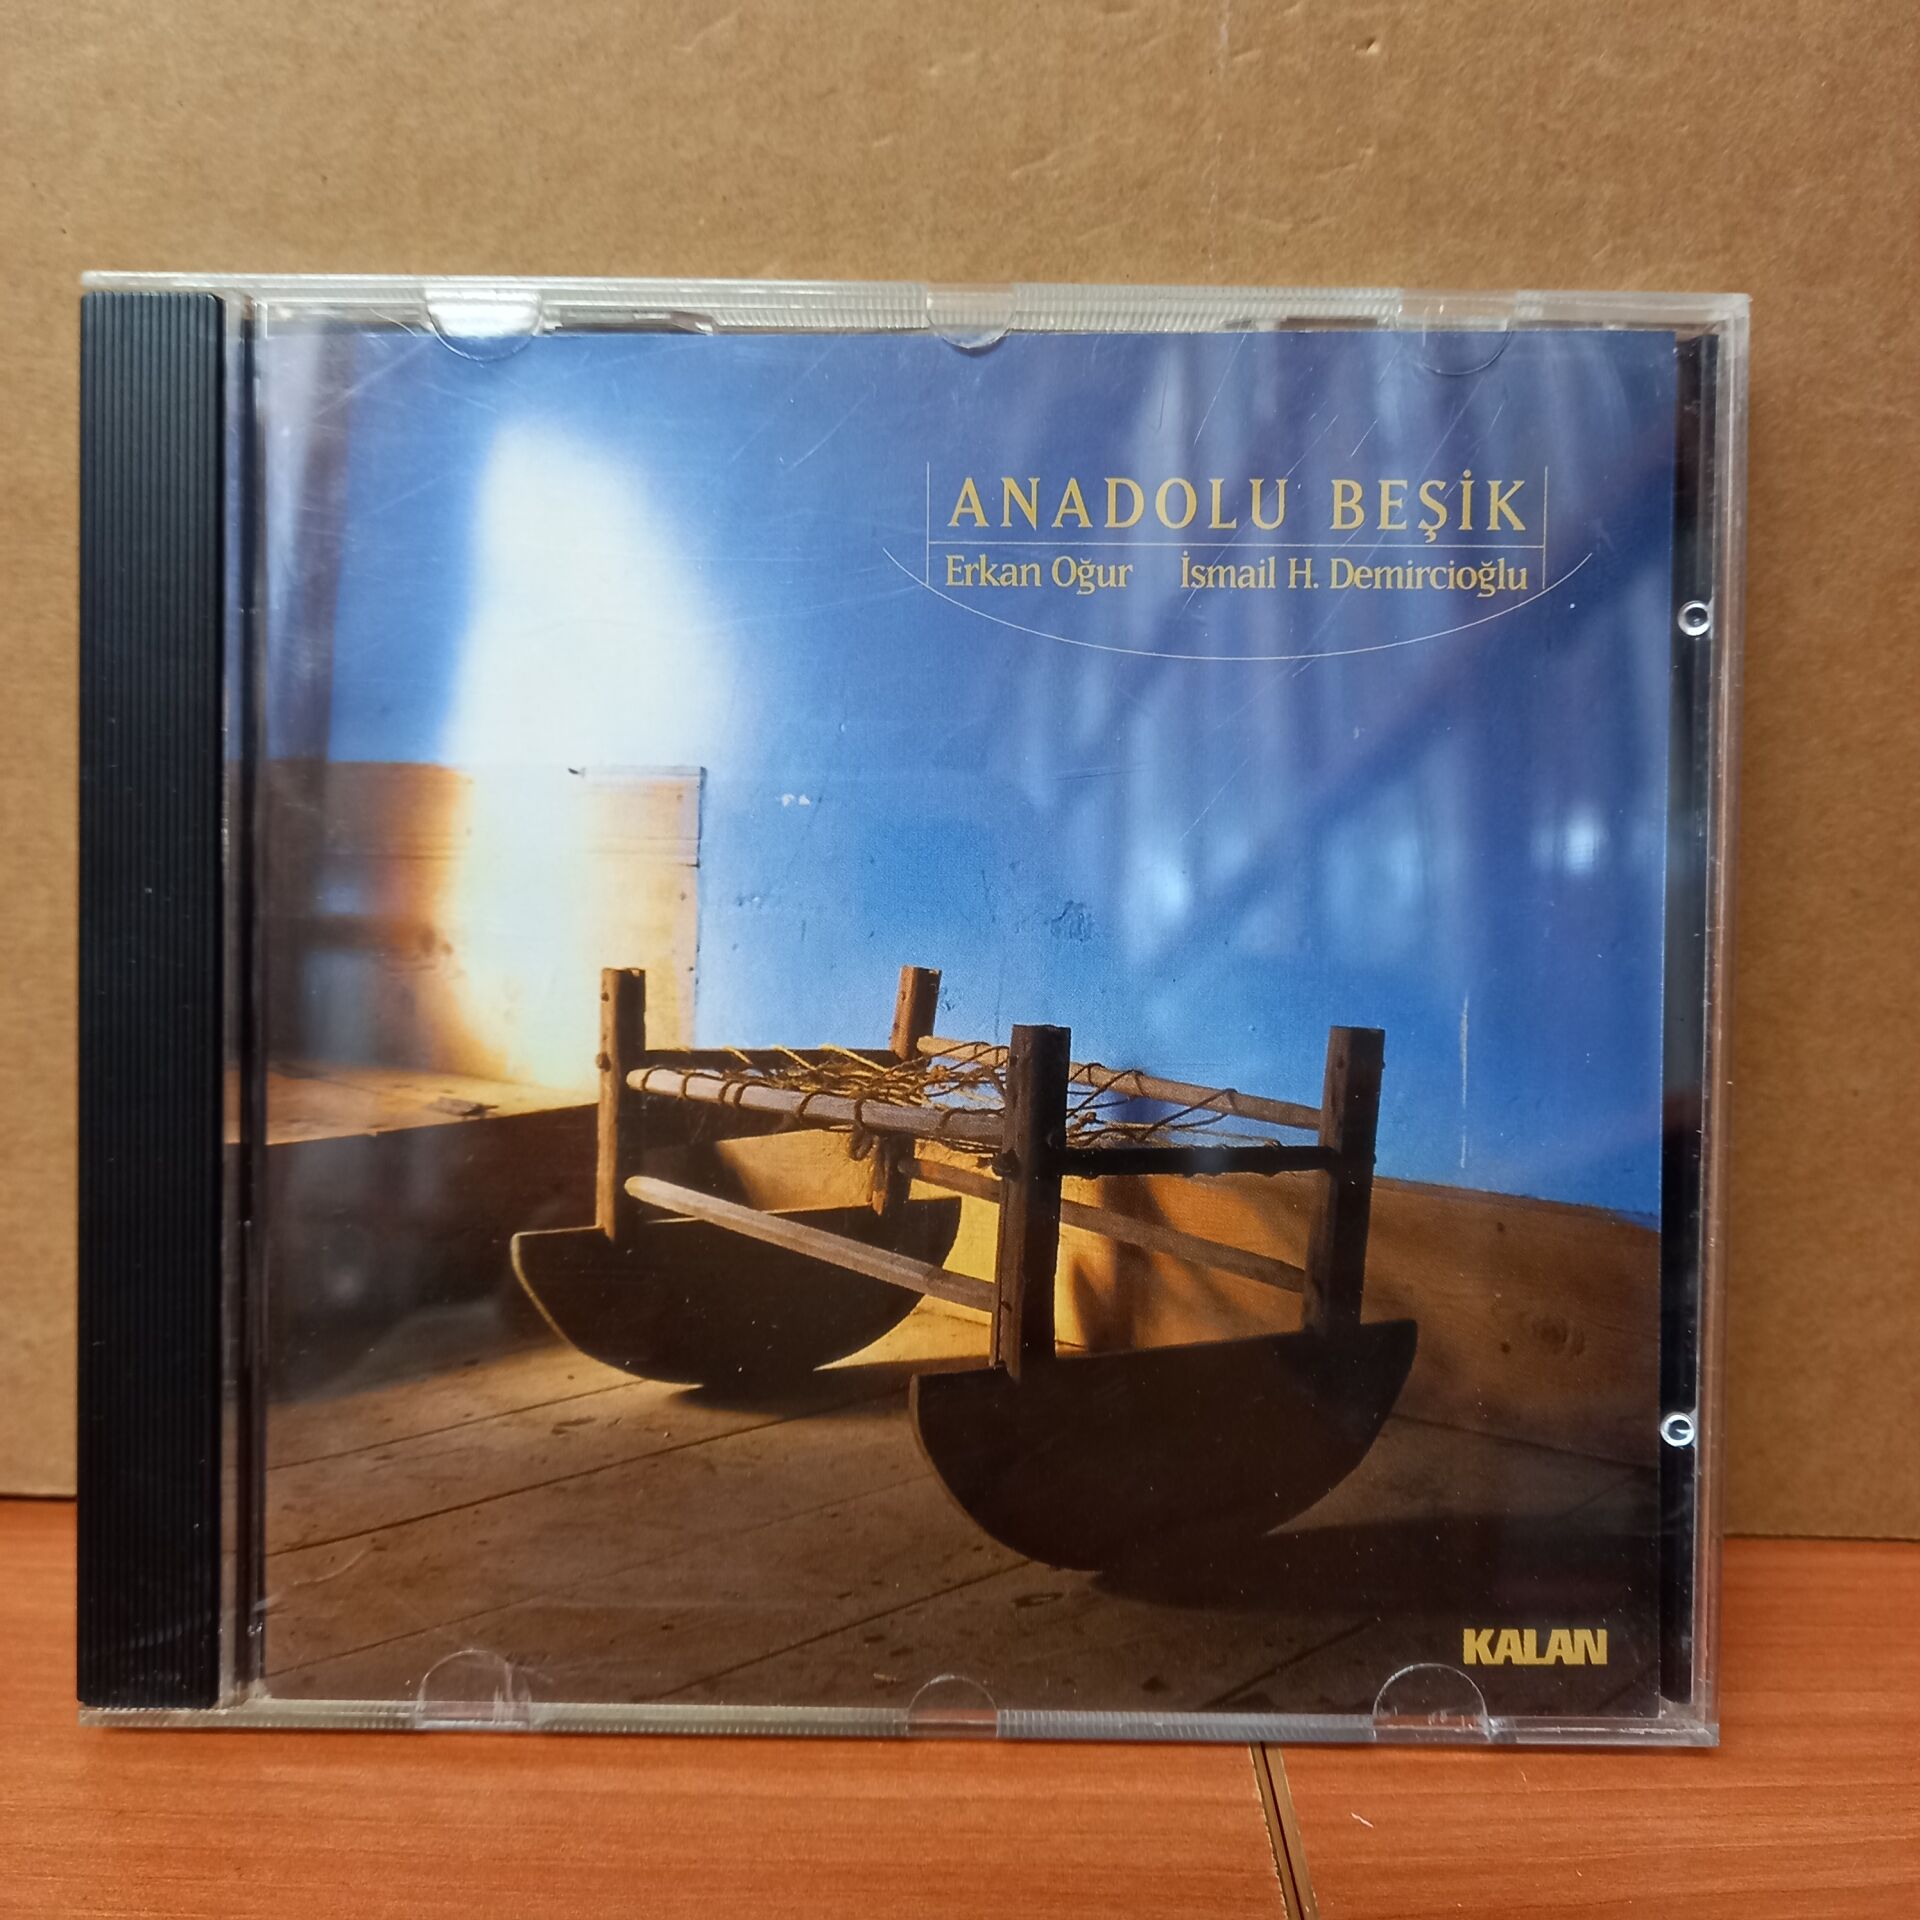 ANADOLU BEŞİK / ERKAN OĞUR, İSMAİL H. DEMİRCİOĞLU (2000) - CD 2.EL